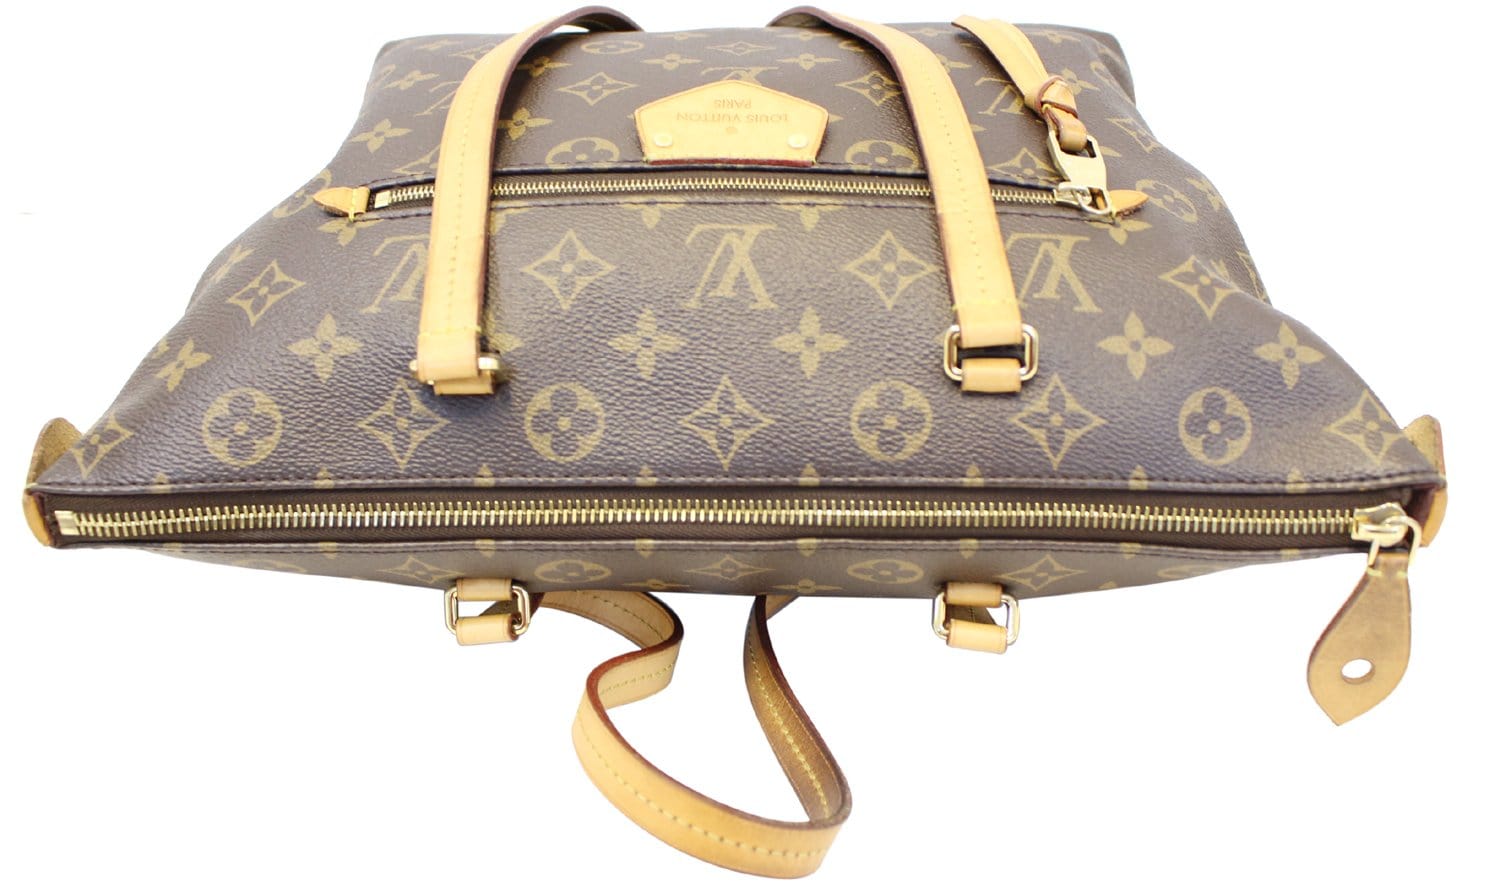 Unboxing the Louis Vuitton Damier VERONA PM Authentic bag